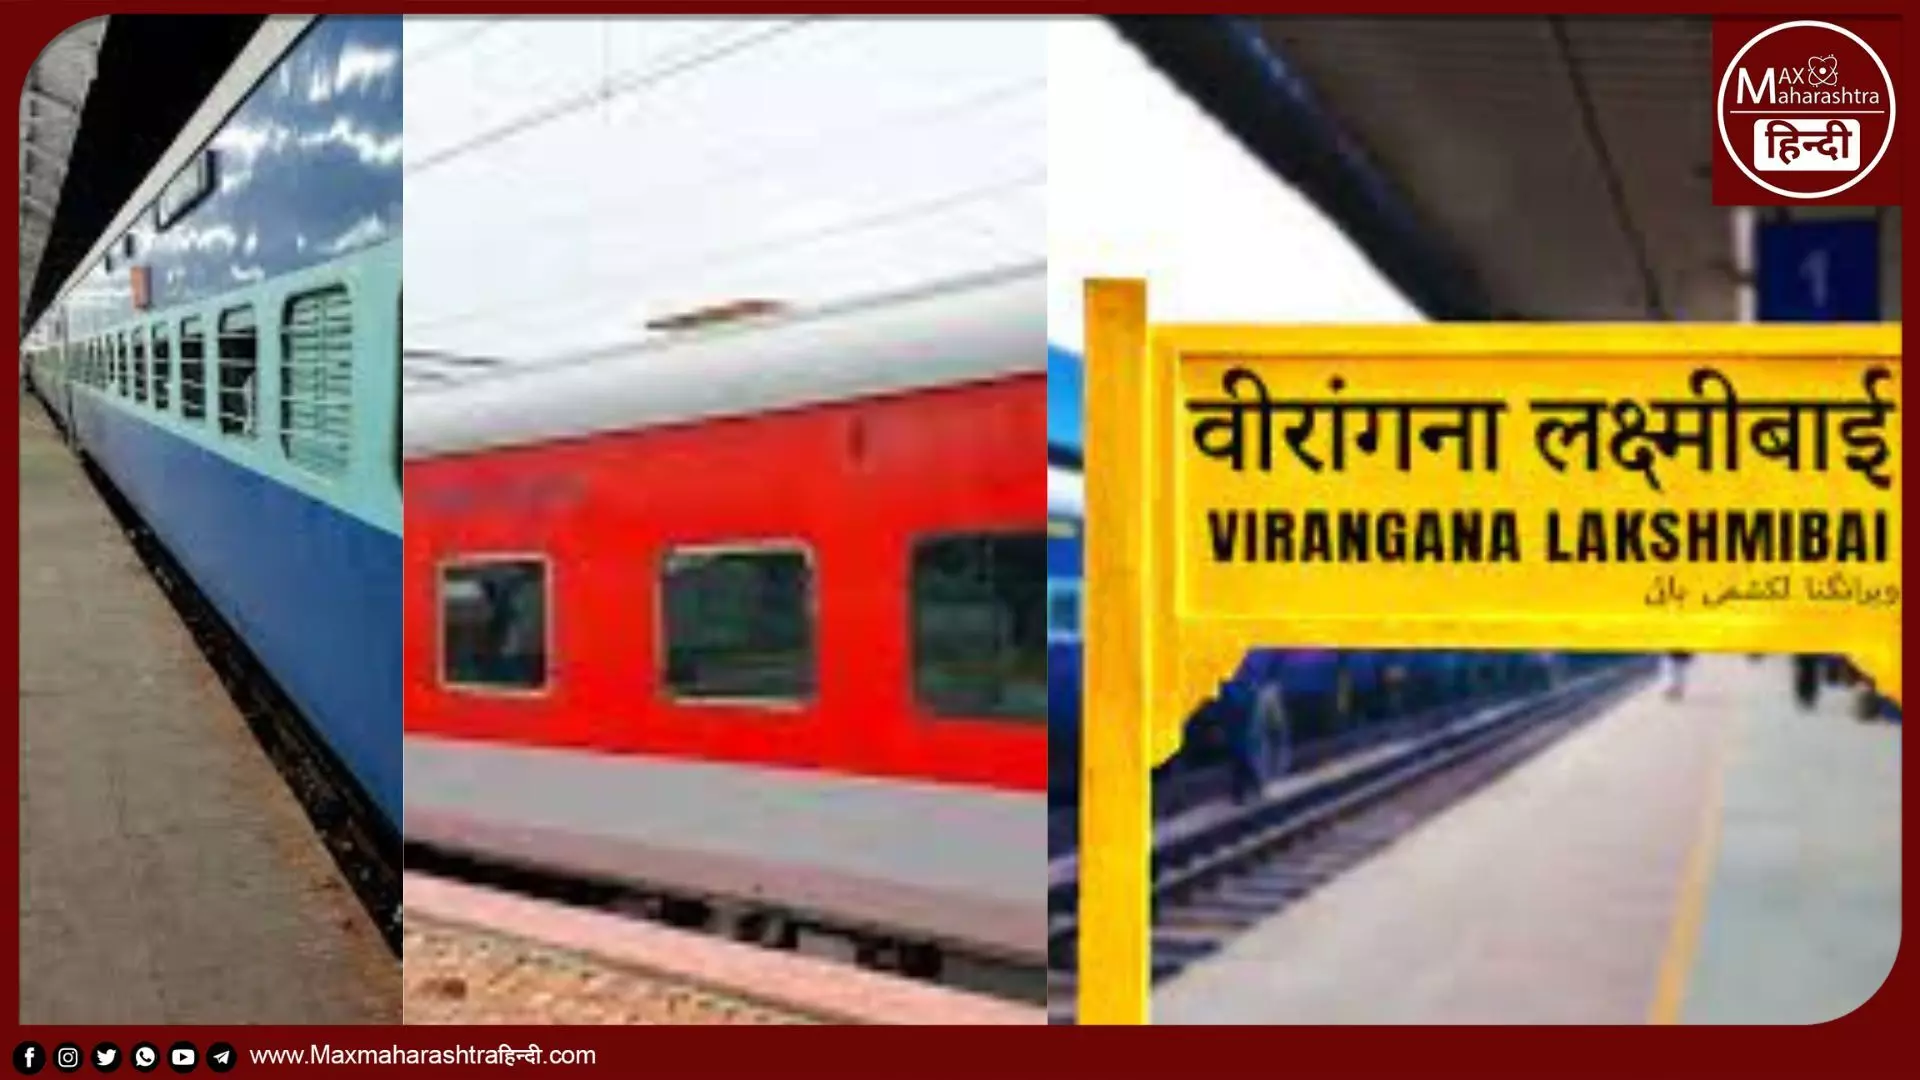 मध्य रेल द्वारा मुंबई - कानपुर और पुणे - वीरांगना लक्ष्मीबाई जंक्शन के बीच 52 समर स्पेशल ट्रेनें